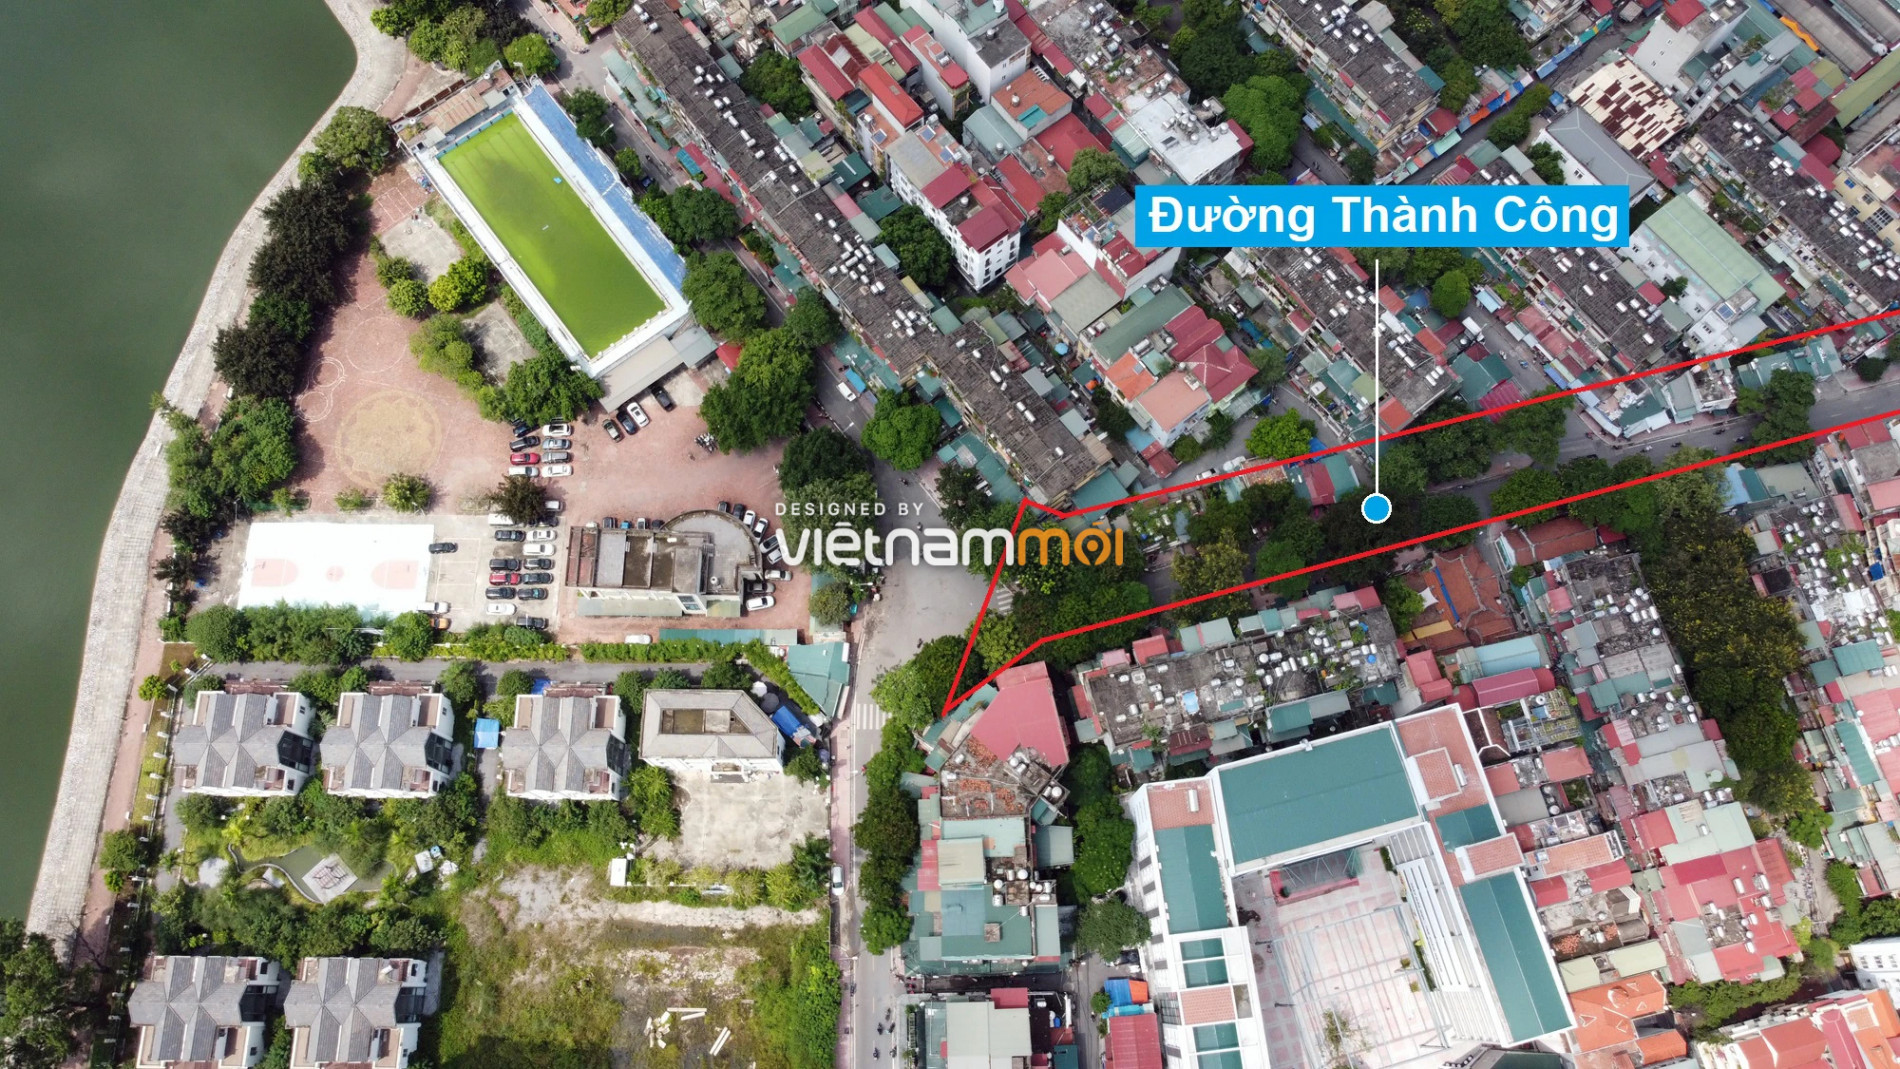 Những khu đất sắp thu hồi để mở đường ở phường Thành Công, Ba Đình, Hà Nội (phần 2) - Ảnh 4.